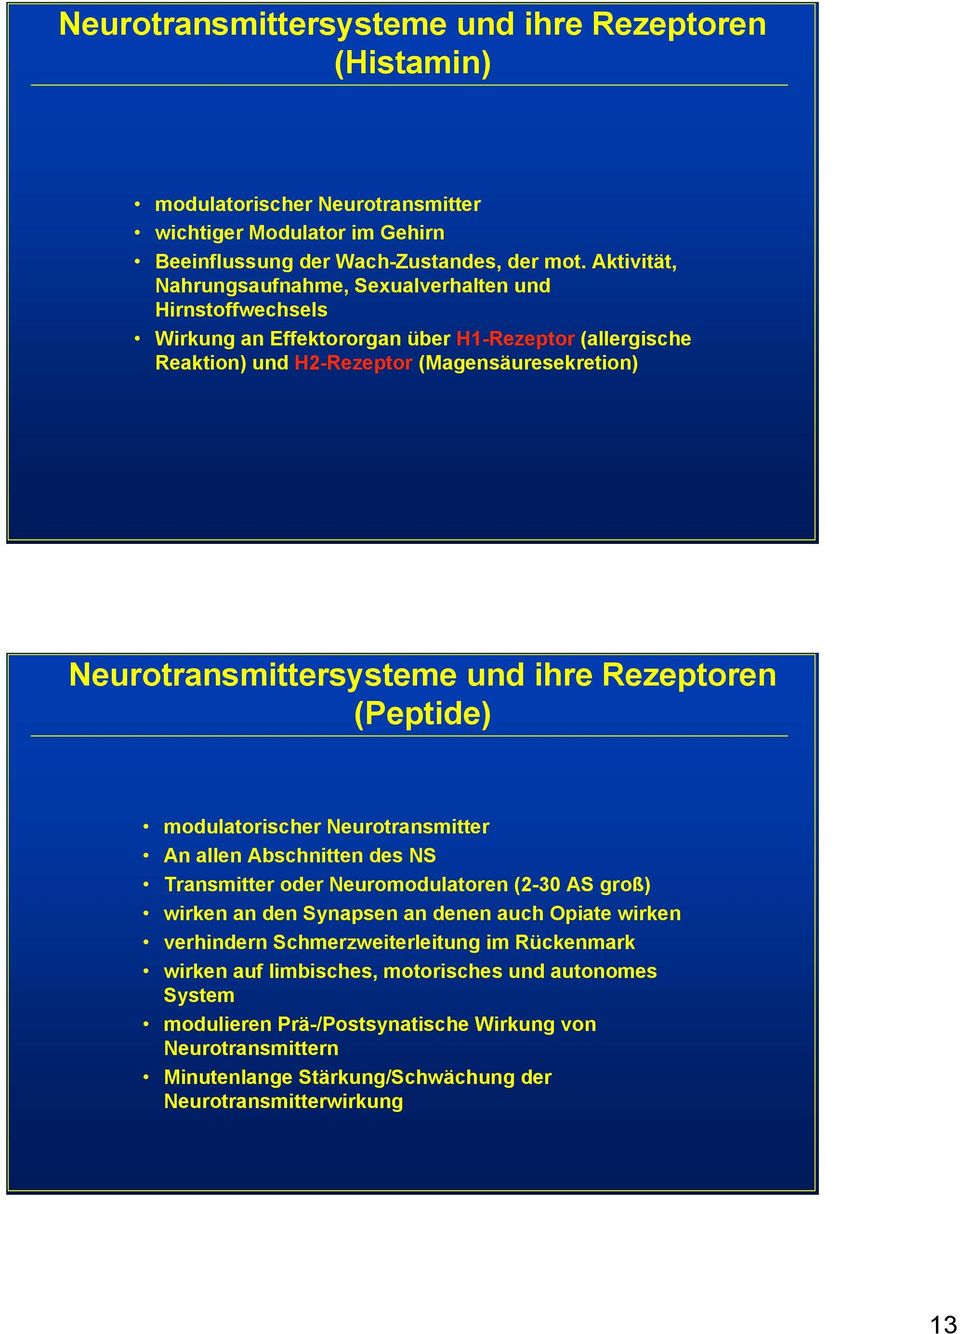 Neurotransmittersysteme und ihre Rezeptoren (Peptide) modulatorischer Neurotransmitter An allen Abschnitten des NS Transmitter oder Neuromodulatoren (2-30 AS groß) wirken an den Synapsen an